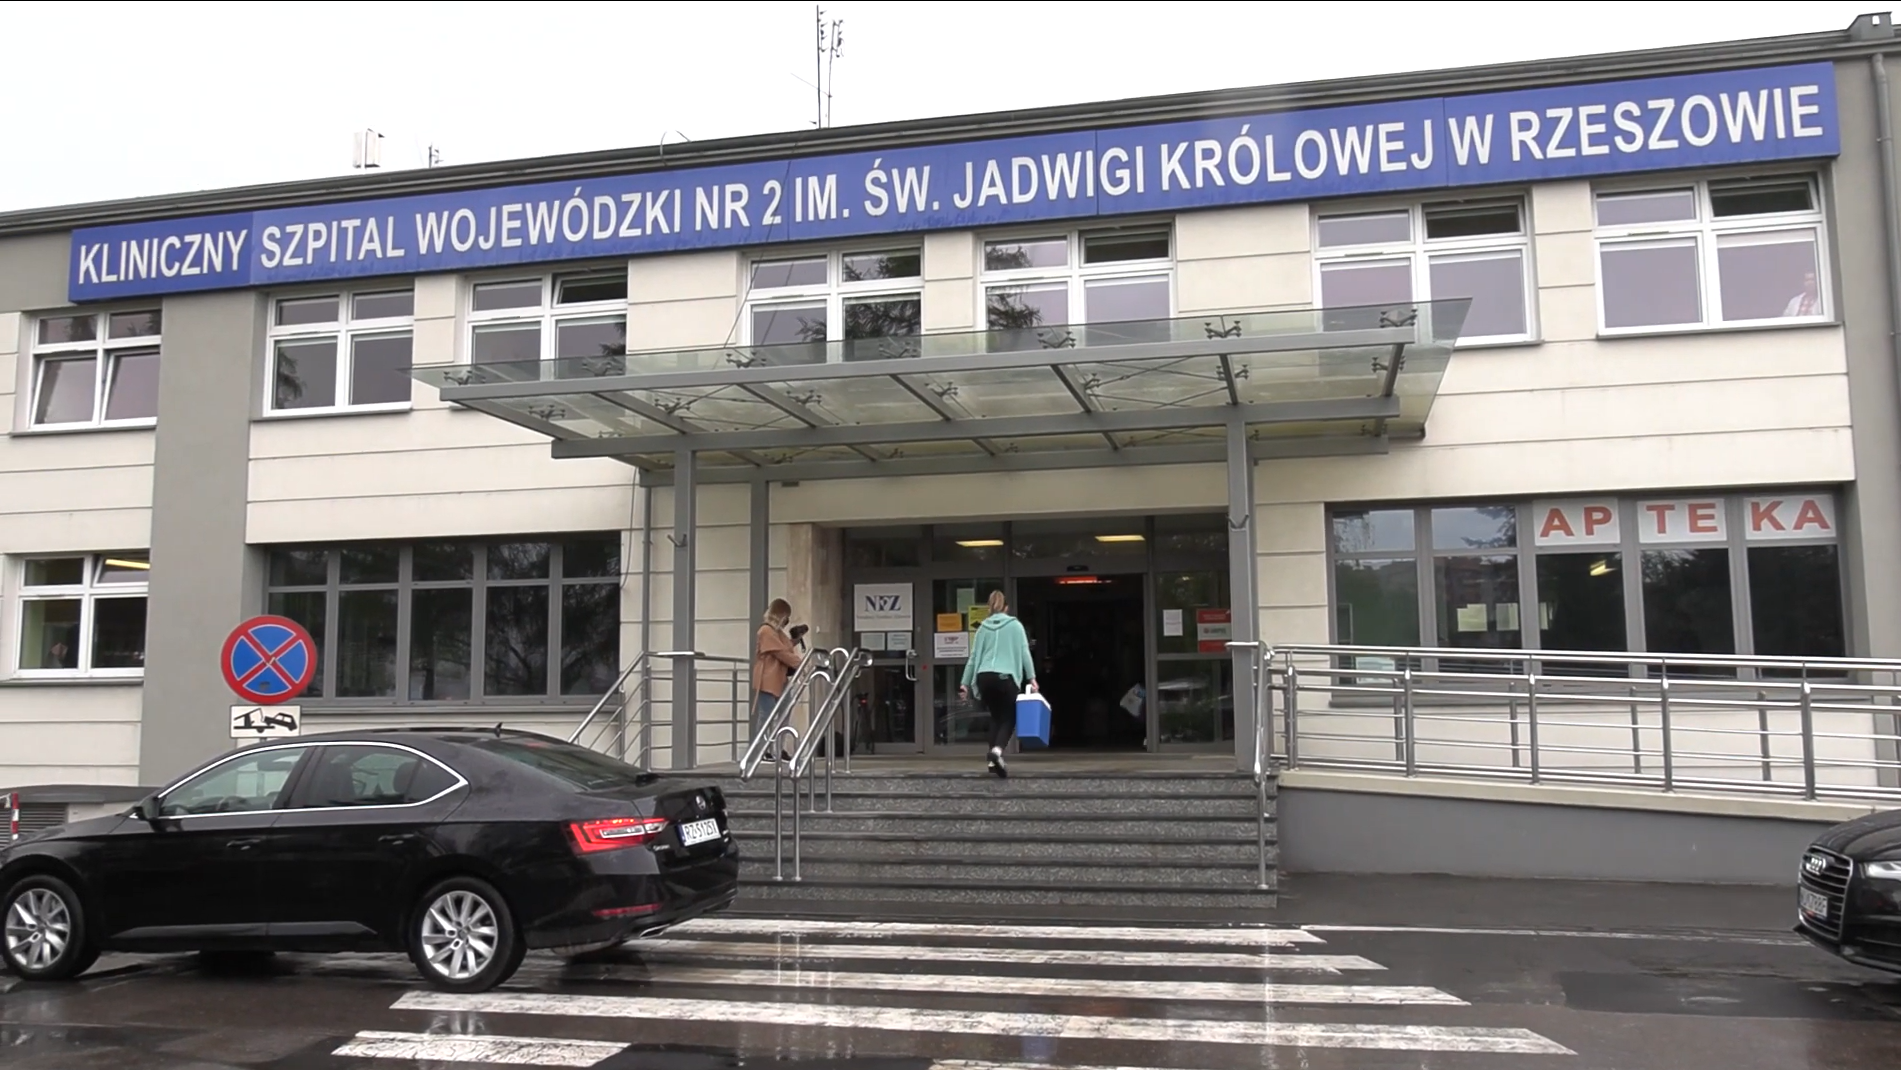 Budynek z napisem "Kliniczny Szpital Wojewódzki nr 2"